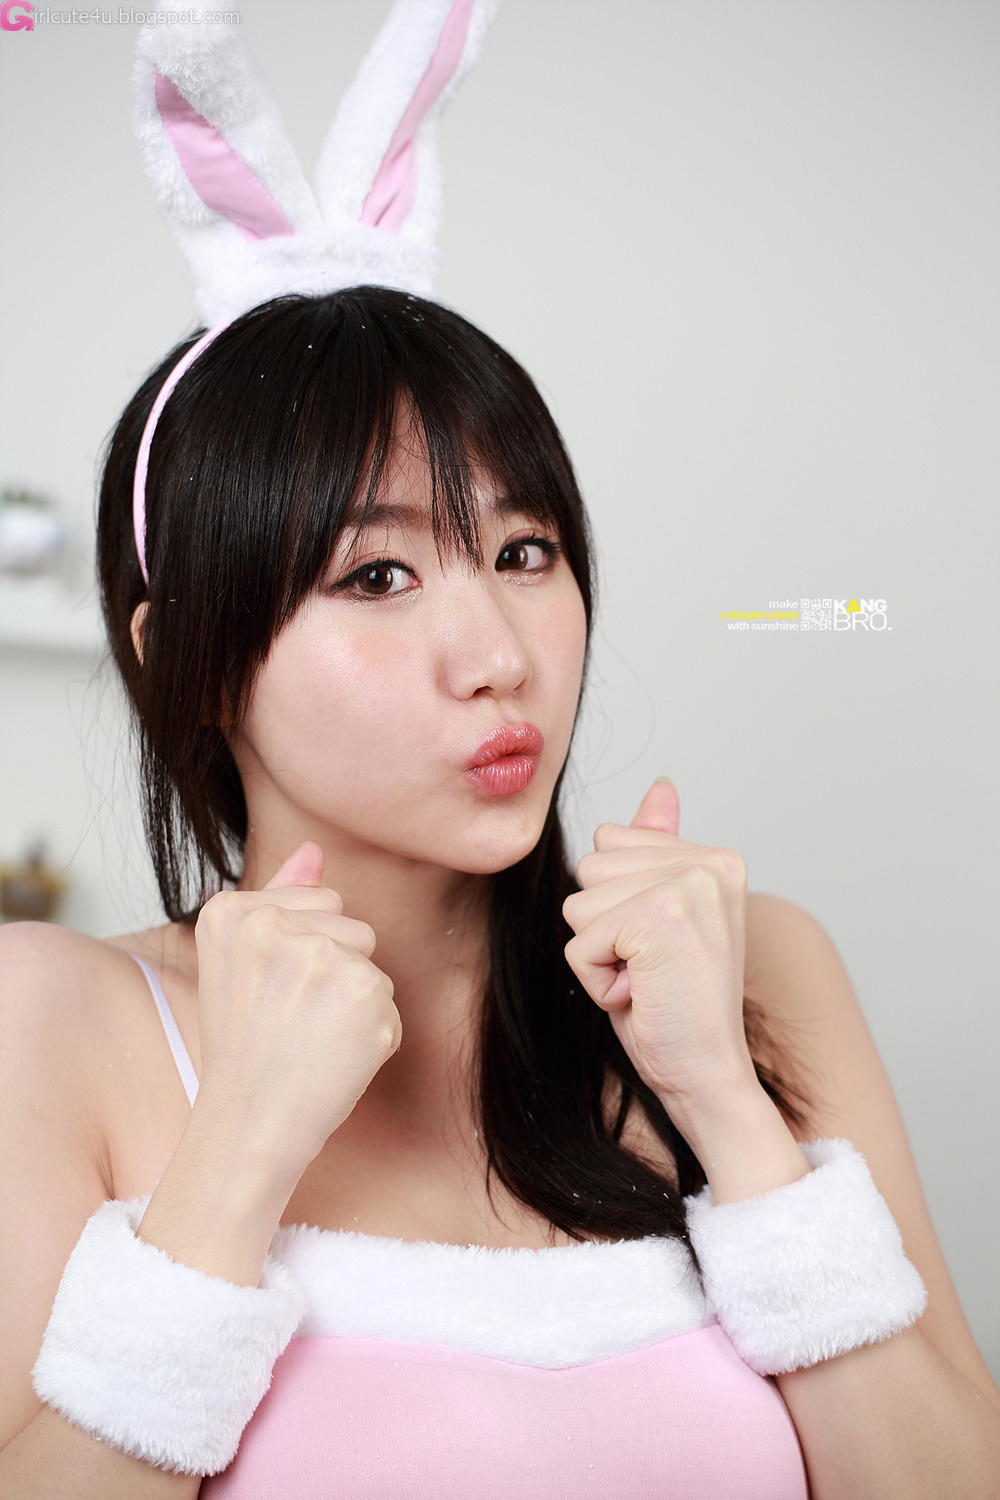 xxx nude girls: Sexy Yeon Da Bin